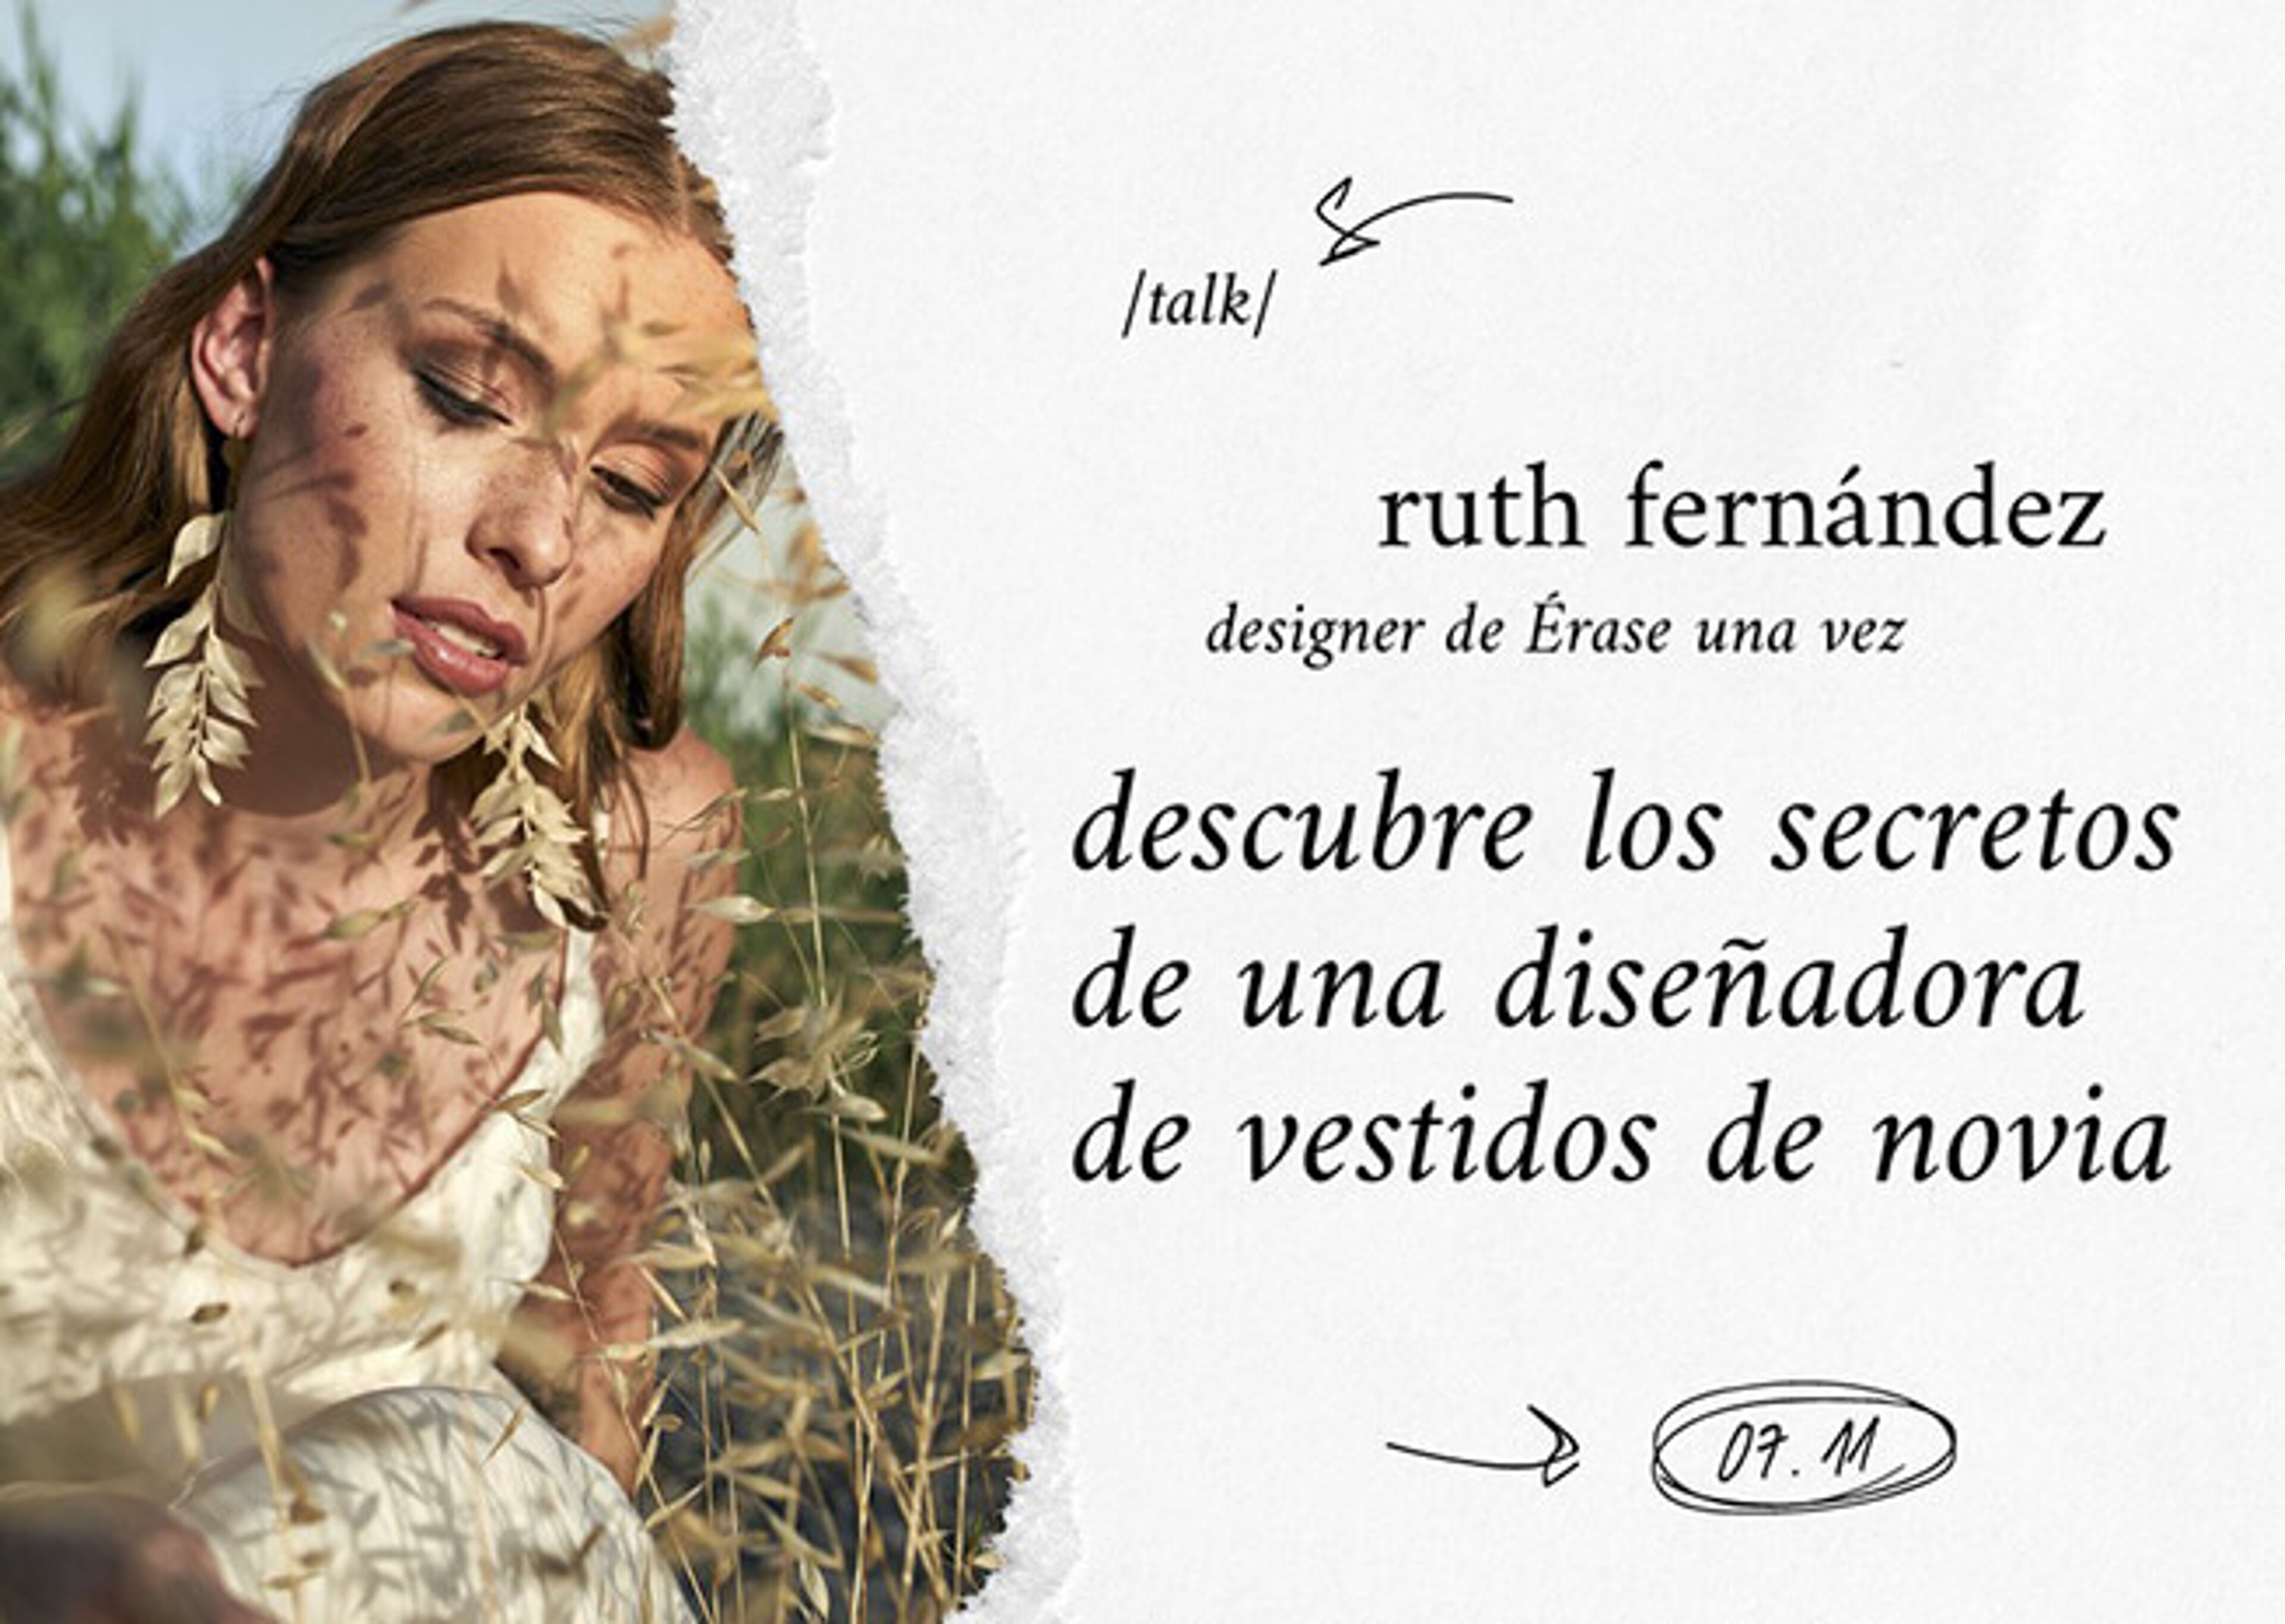 Anuncio de una charla de Ruth Fernández, diseñadora de vestidos de novia, con una imagen de una mujer en un campo y un diseño de papel rasgado.